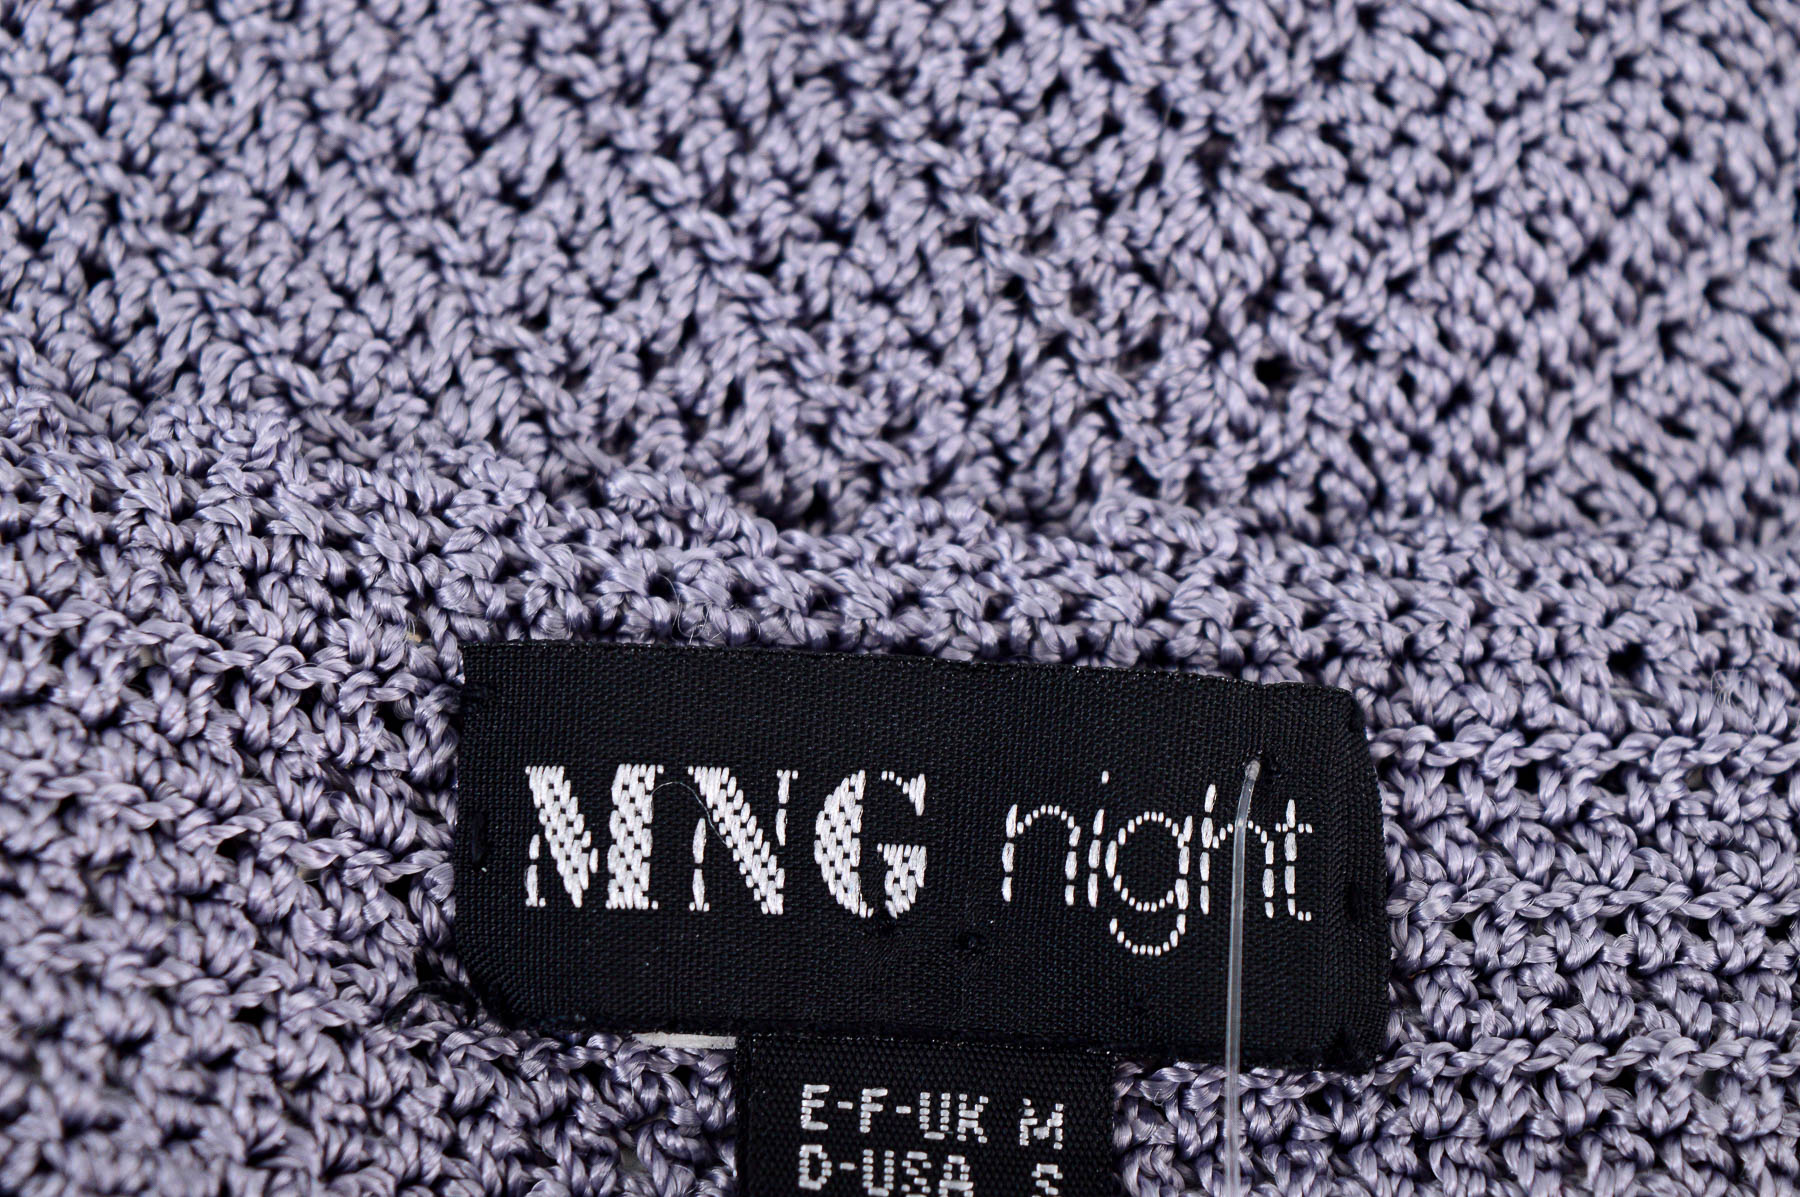 Women's sweater - MNG - 2